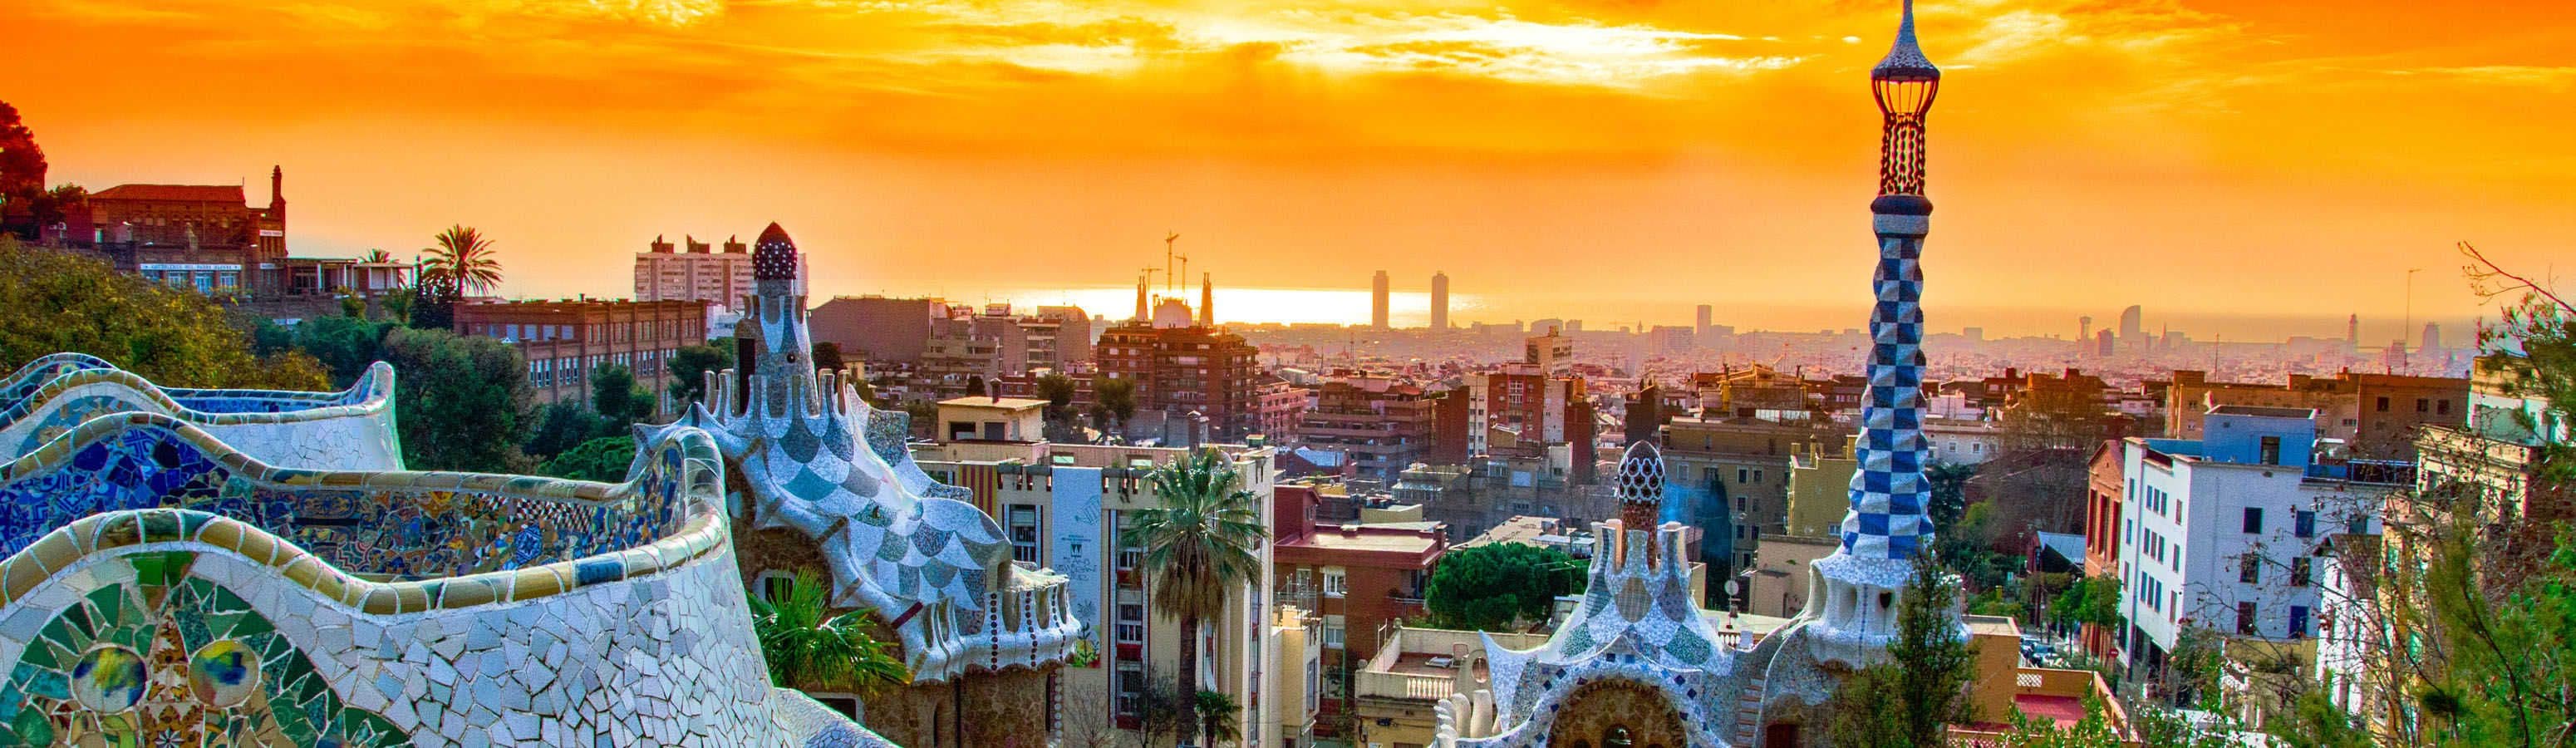 Barcellona - casa della costruzione infinita